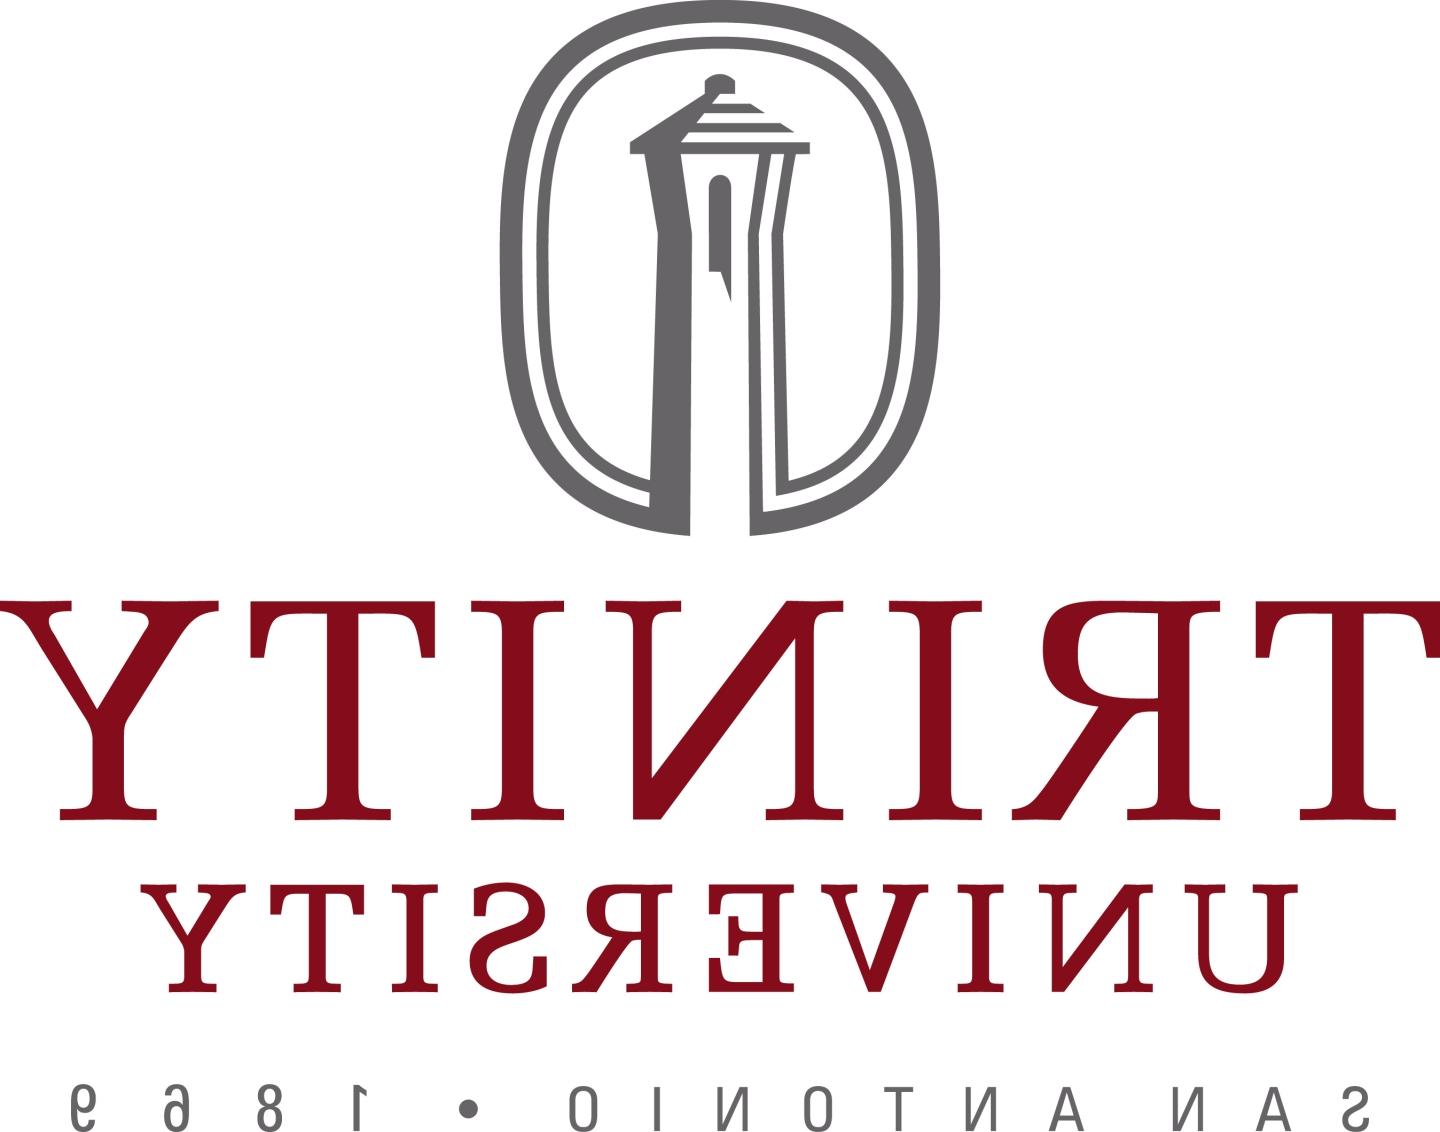 Trinity University logo with tagline